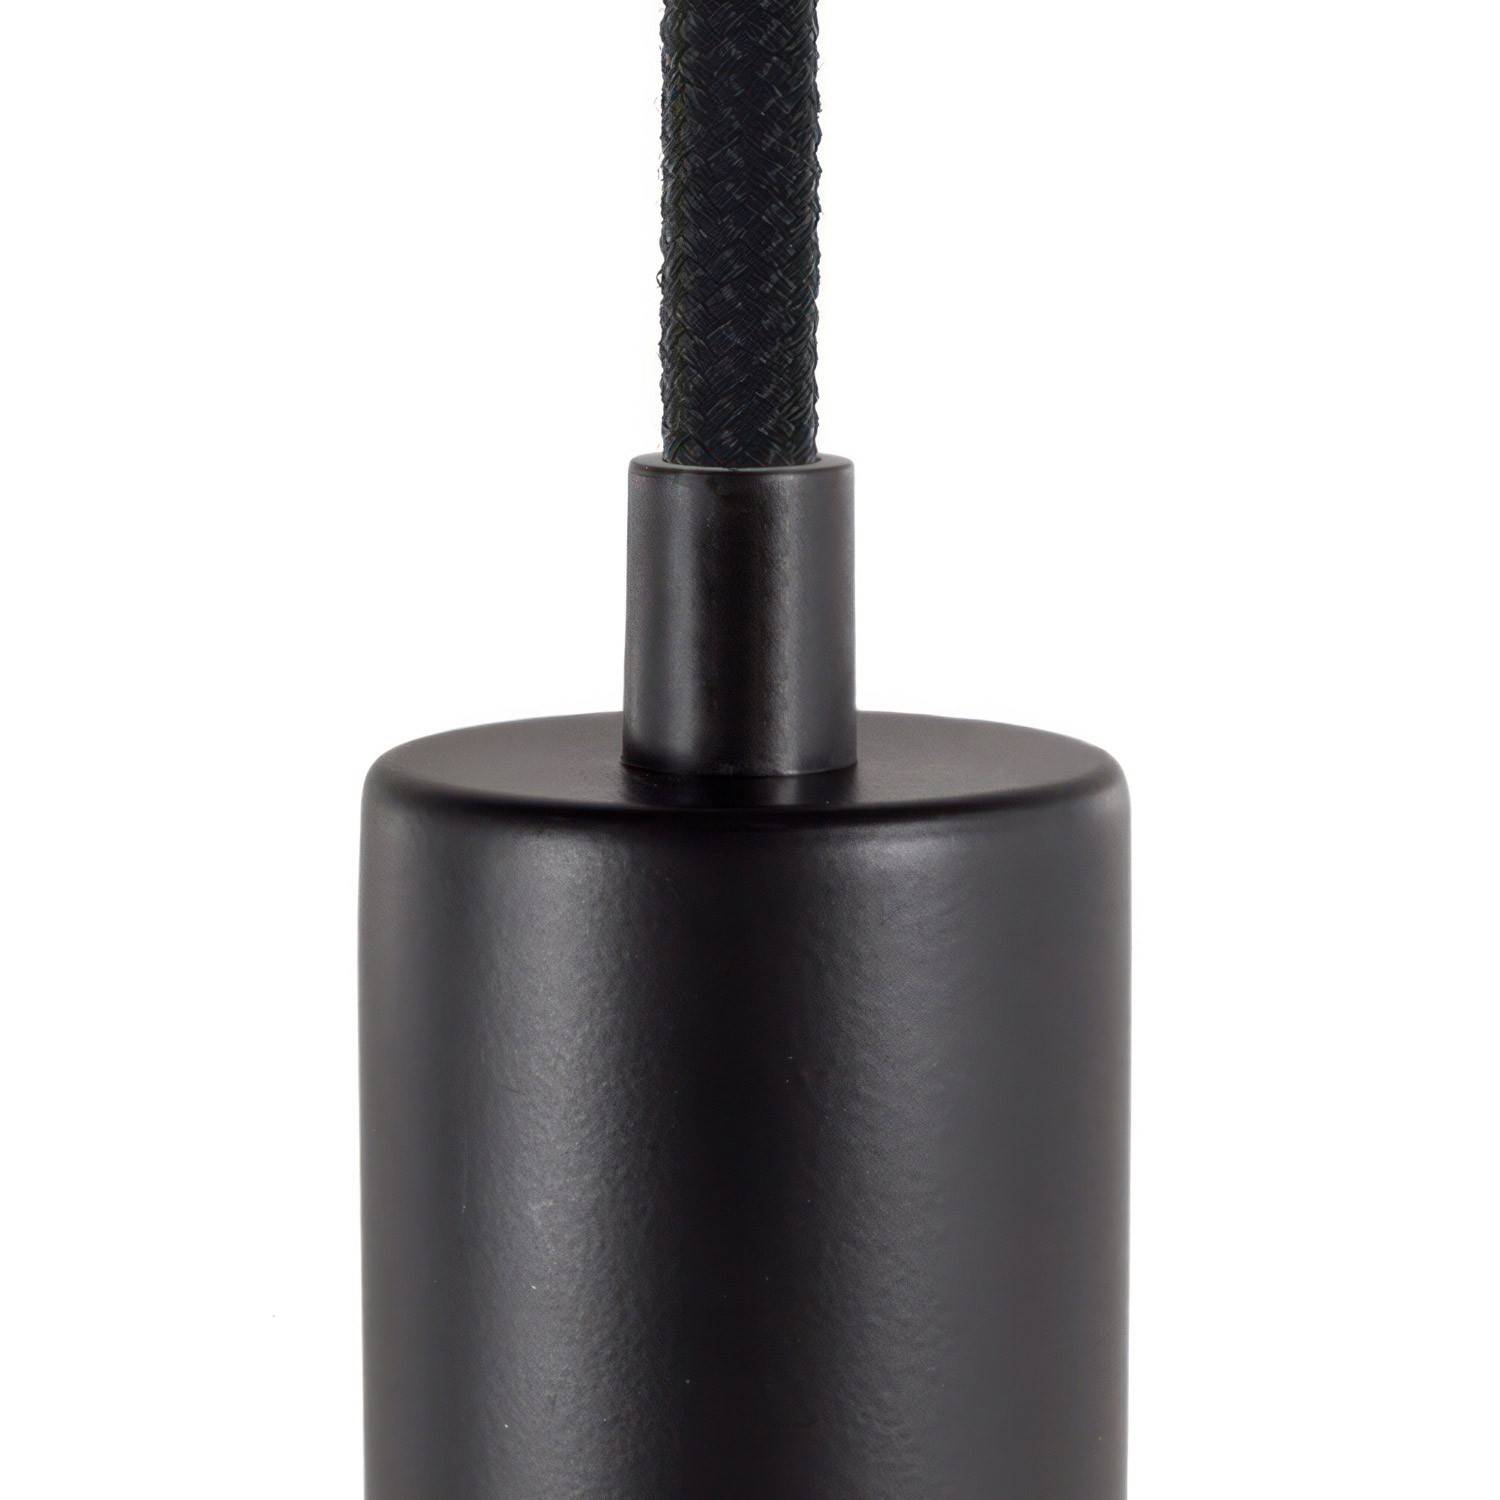 Cylindryczny plastikowy zacisk kablowy w komplecie z prętem, nakrętką i podkładką